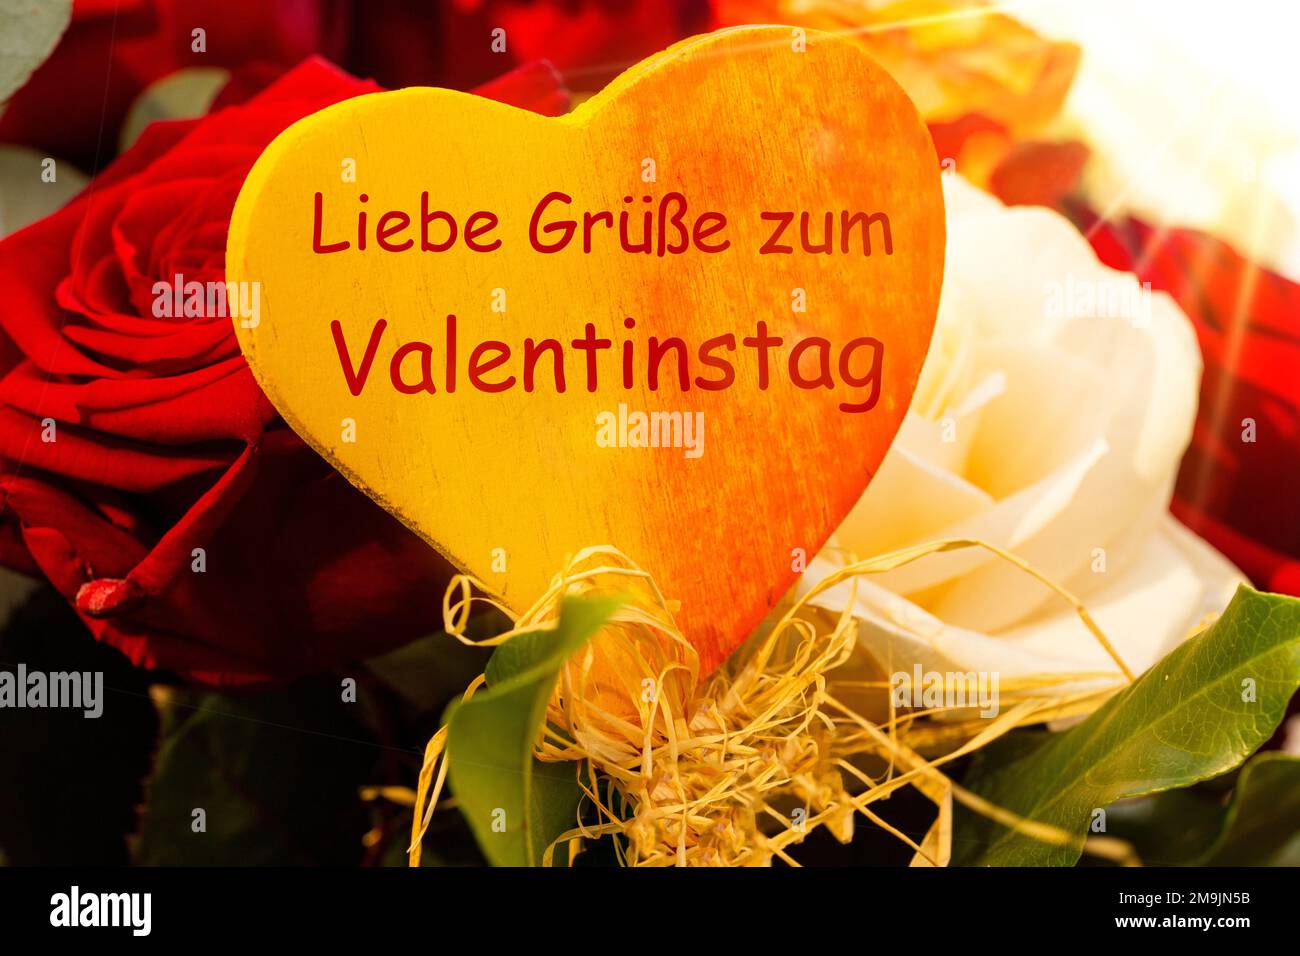 Vœux de Saint-Valentin avec roses rouges et blanches. Le coeur au milieu dit en allemand) Liebe Grüße zum Valentinstag (voeux d'amour pour la Saint-Valentin Banque D'Images